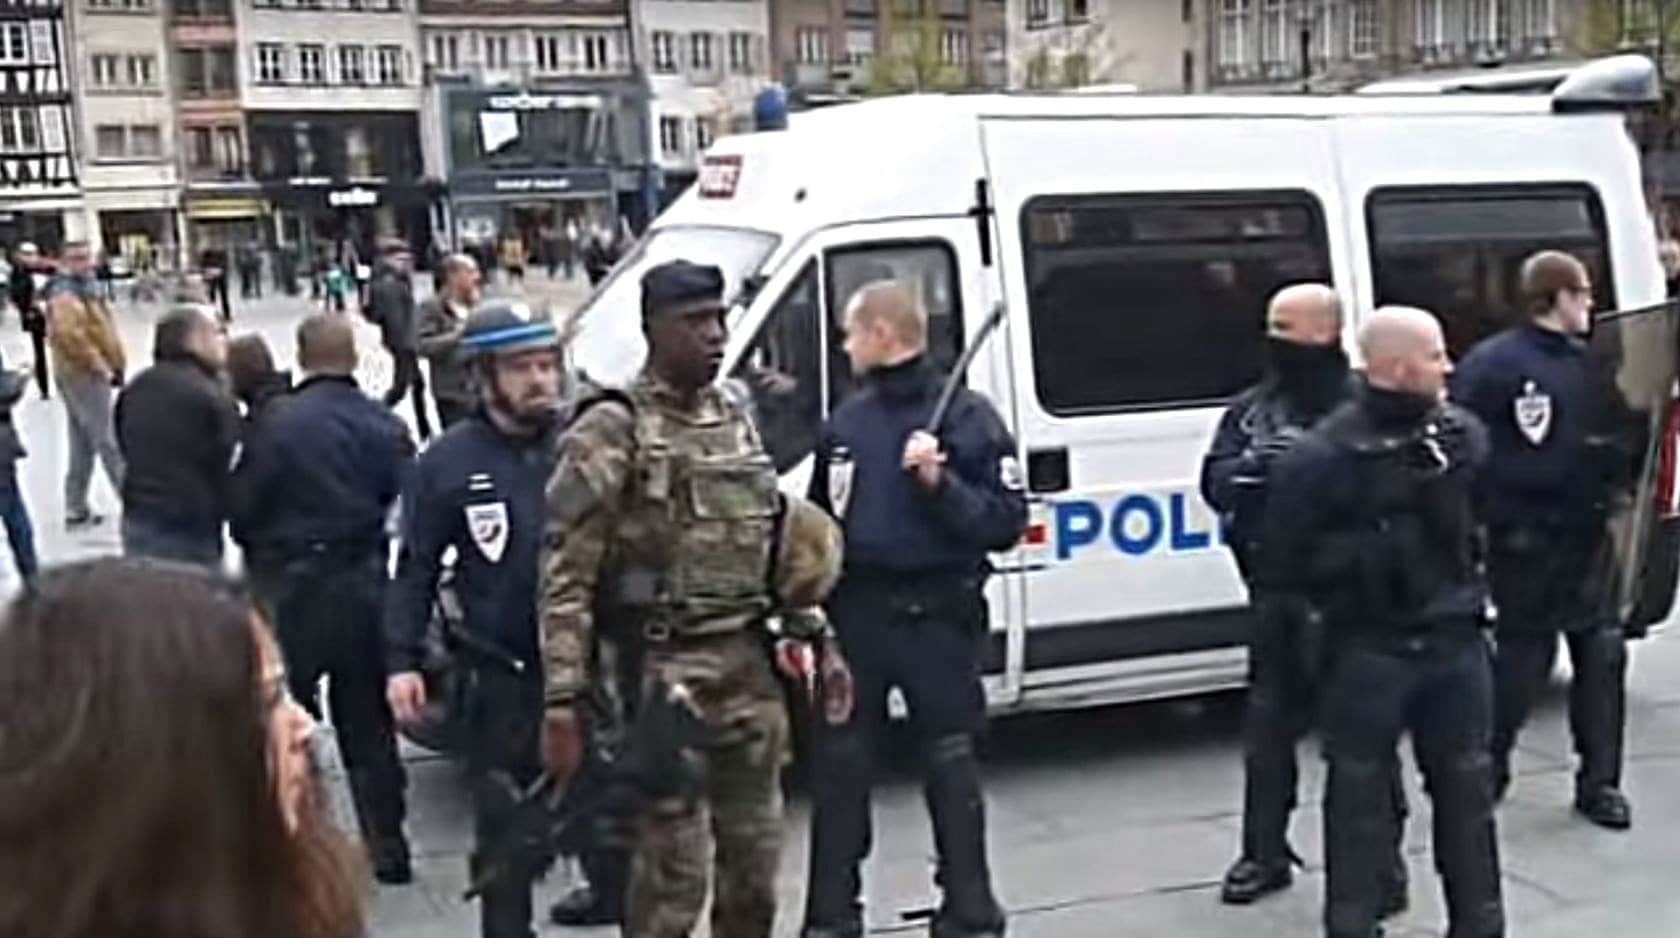 Militaires et policiers face à des manifestants place Kléber, retour en vidéos